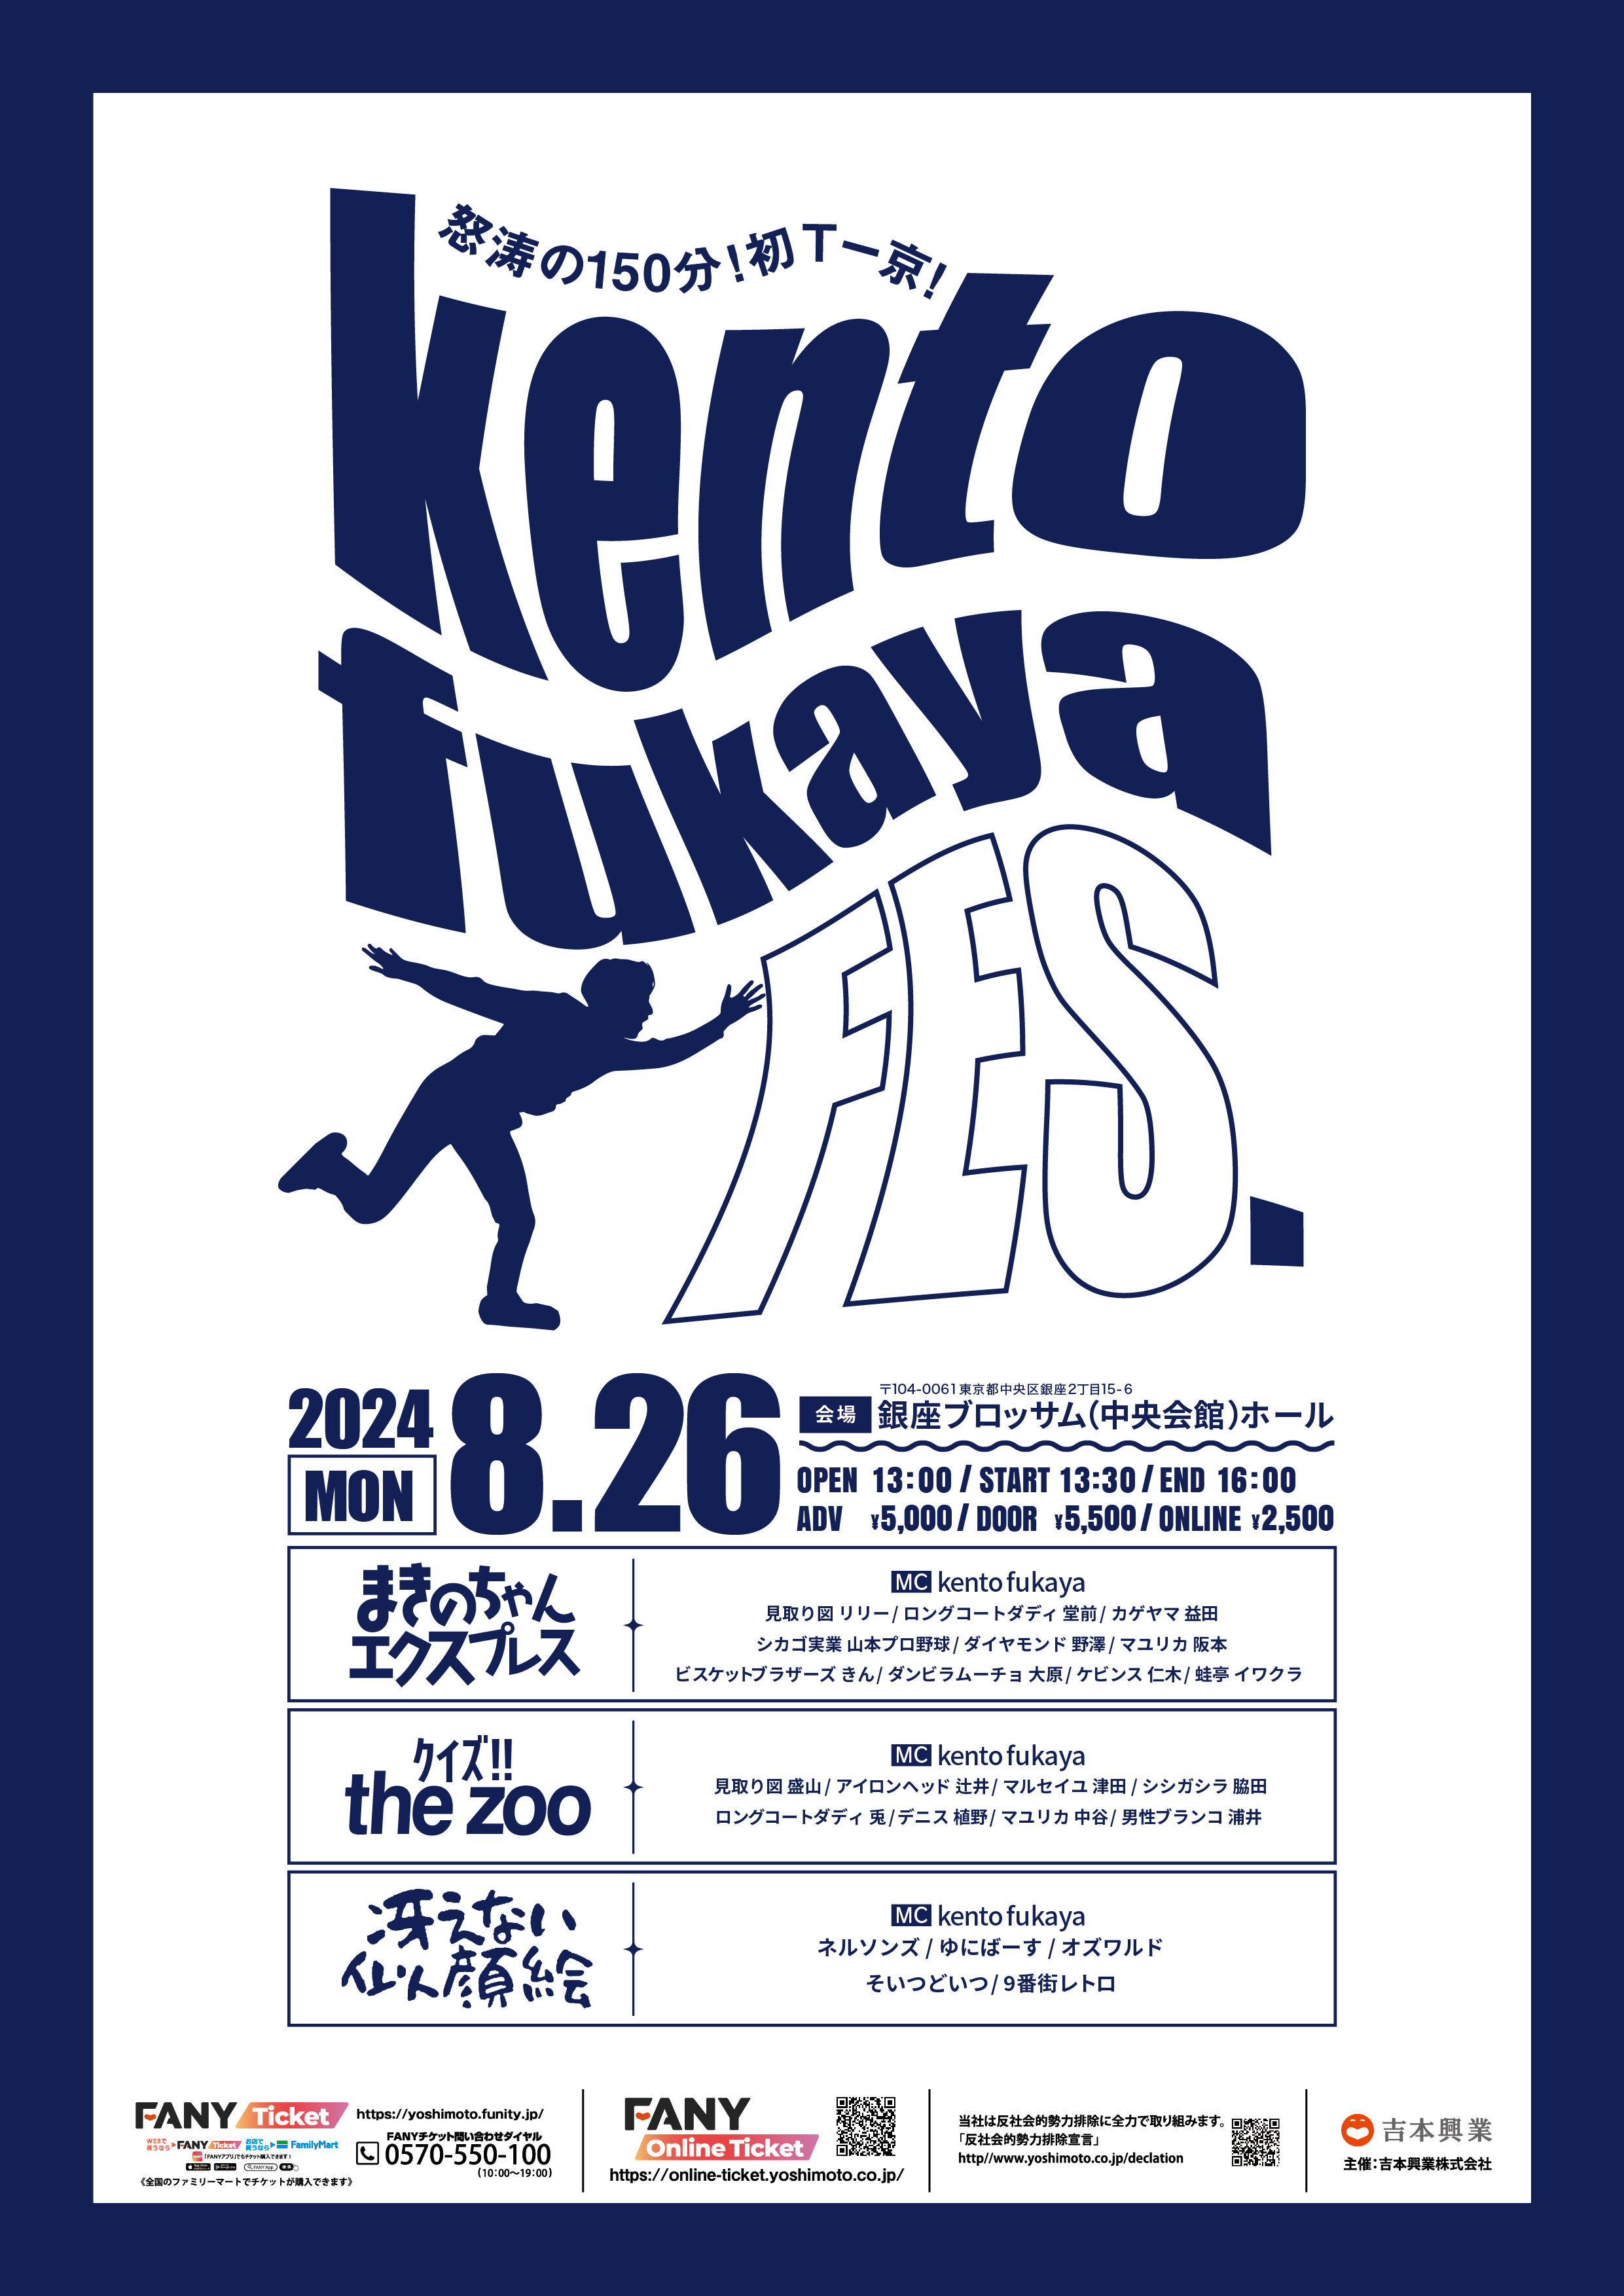 8月26日(月)は祭り！Kento fukaya考案の企画を3本立て！怒涛の150分公演！！ゲストは選りすぐりの吉本芸人約30名を総動員！！！『kento fukaya FES』東京にて開催決定のサブ画像1